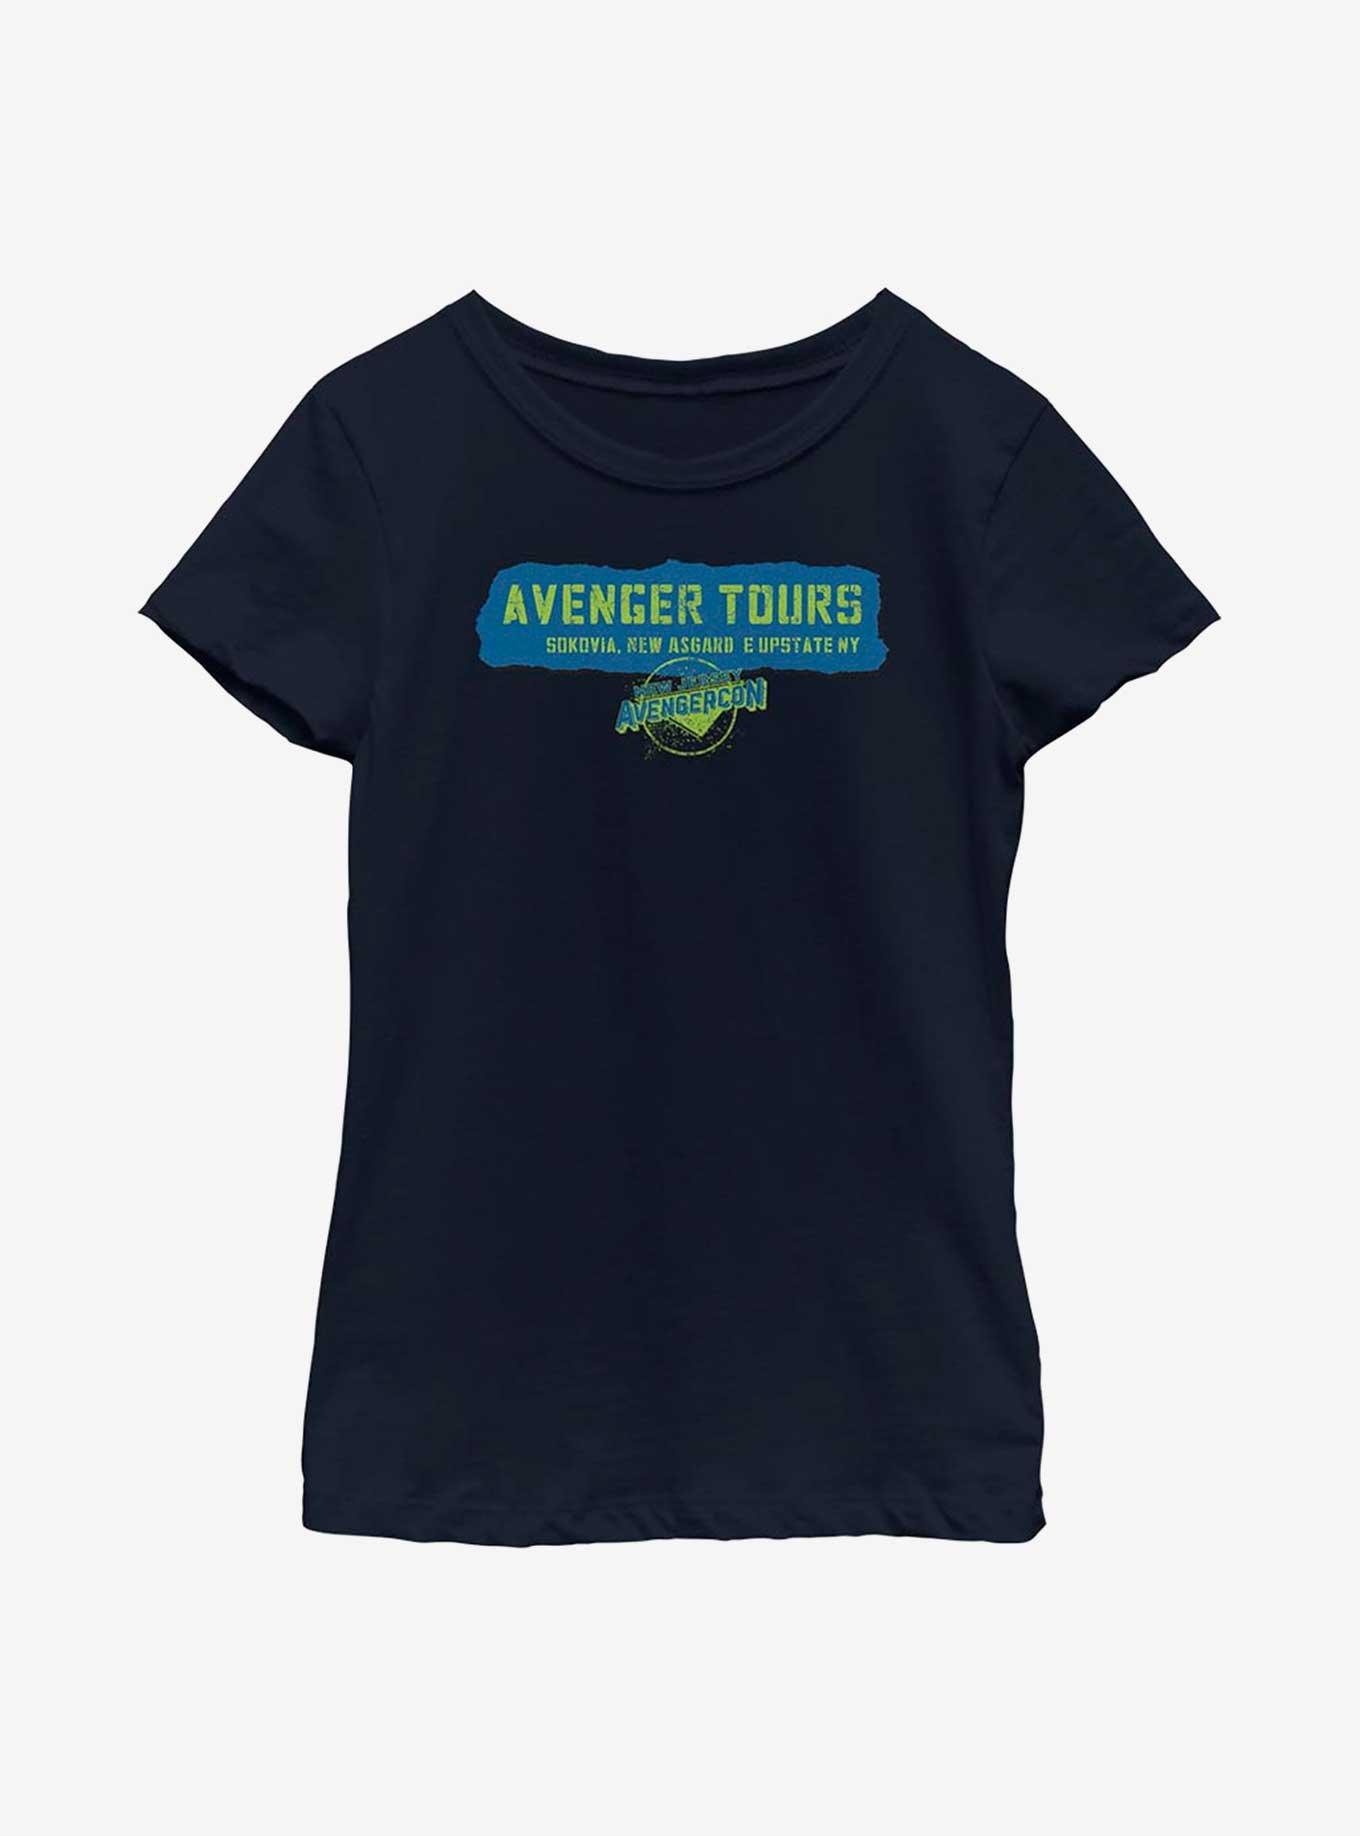 Marvel Ms. Marvel Avenger Tours Youth Girls T-Shirt, NAVY, hi-res